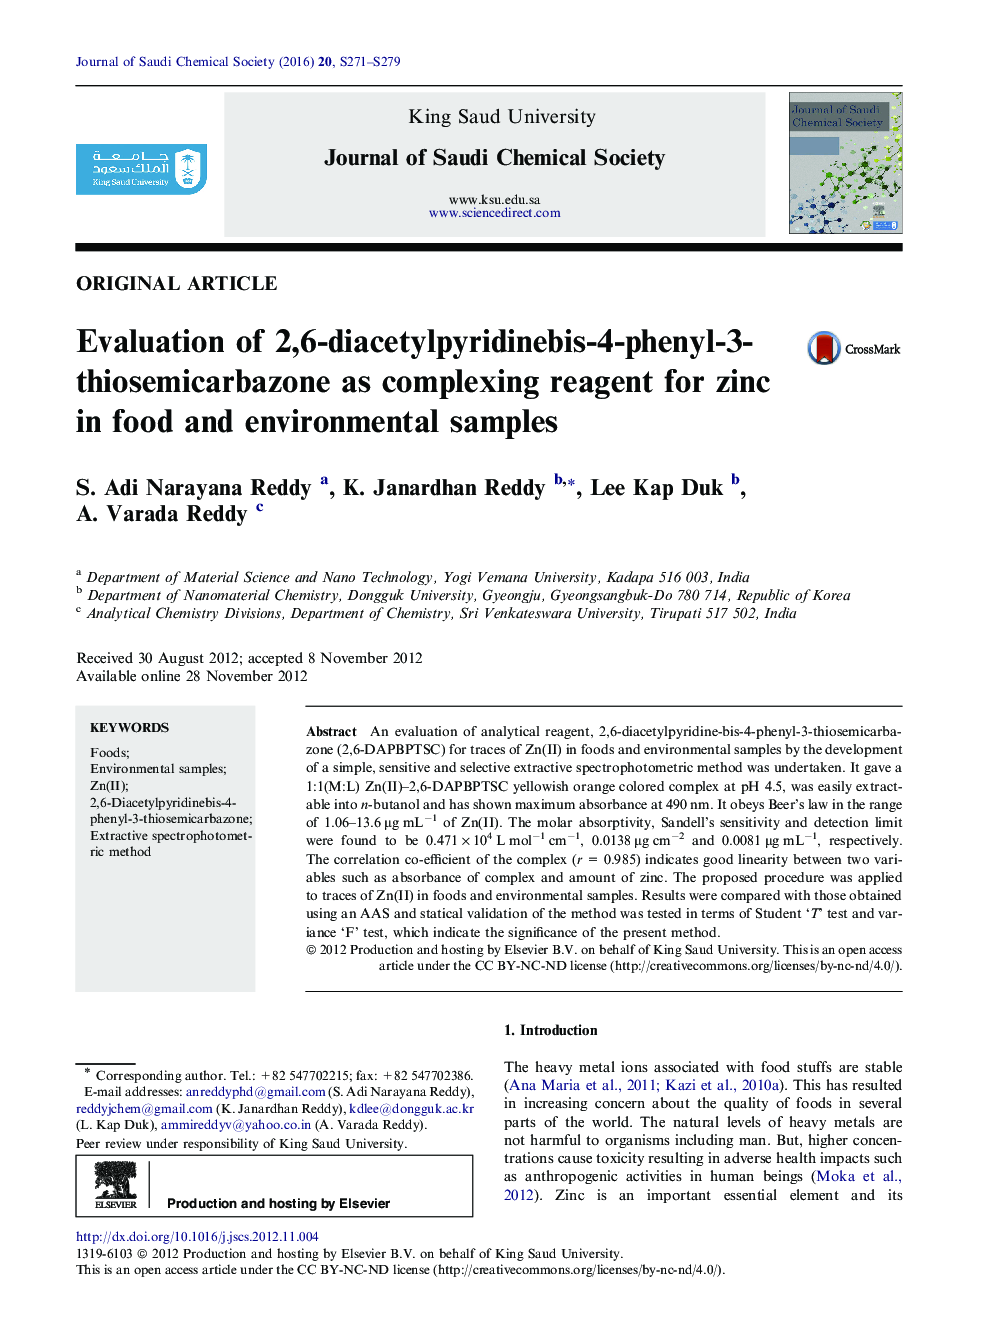 ارزیابی اصل مقاله 2،6-دی سیتیل پرییدین بیس-4-فنیل 3-تیزیمیکاربازون به عنوان یک واکنش پیچیده برای روی در نمونه های غذایی و محیطی 